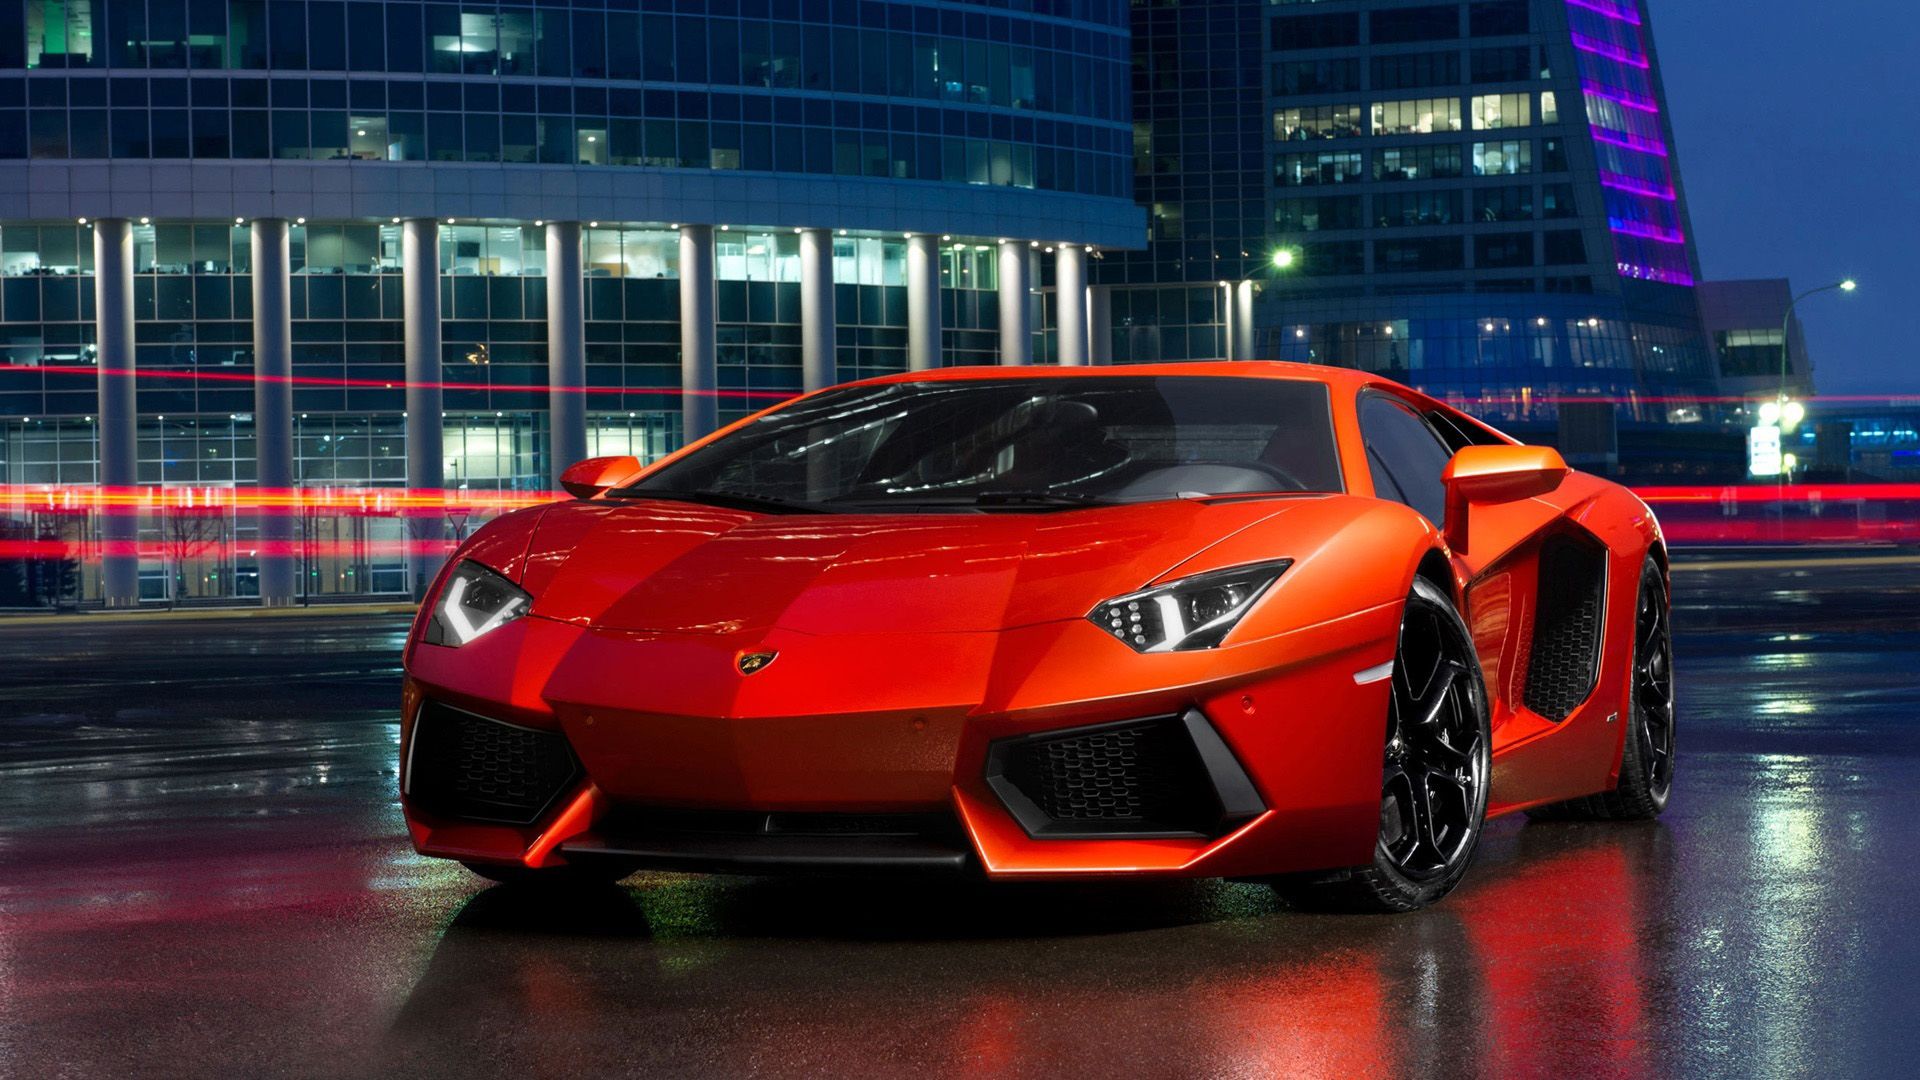 Free download Red Lamborghini sports car desktop wallpaper